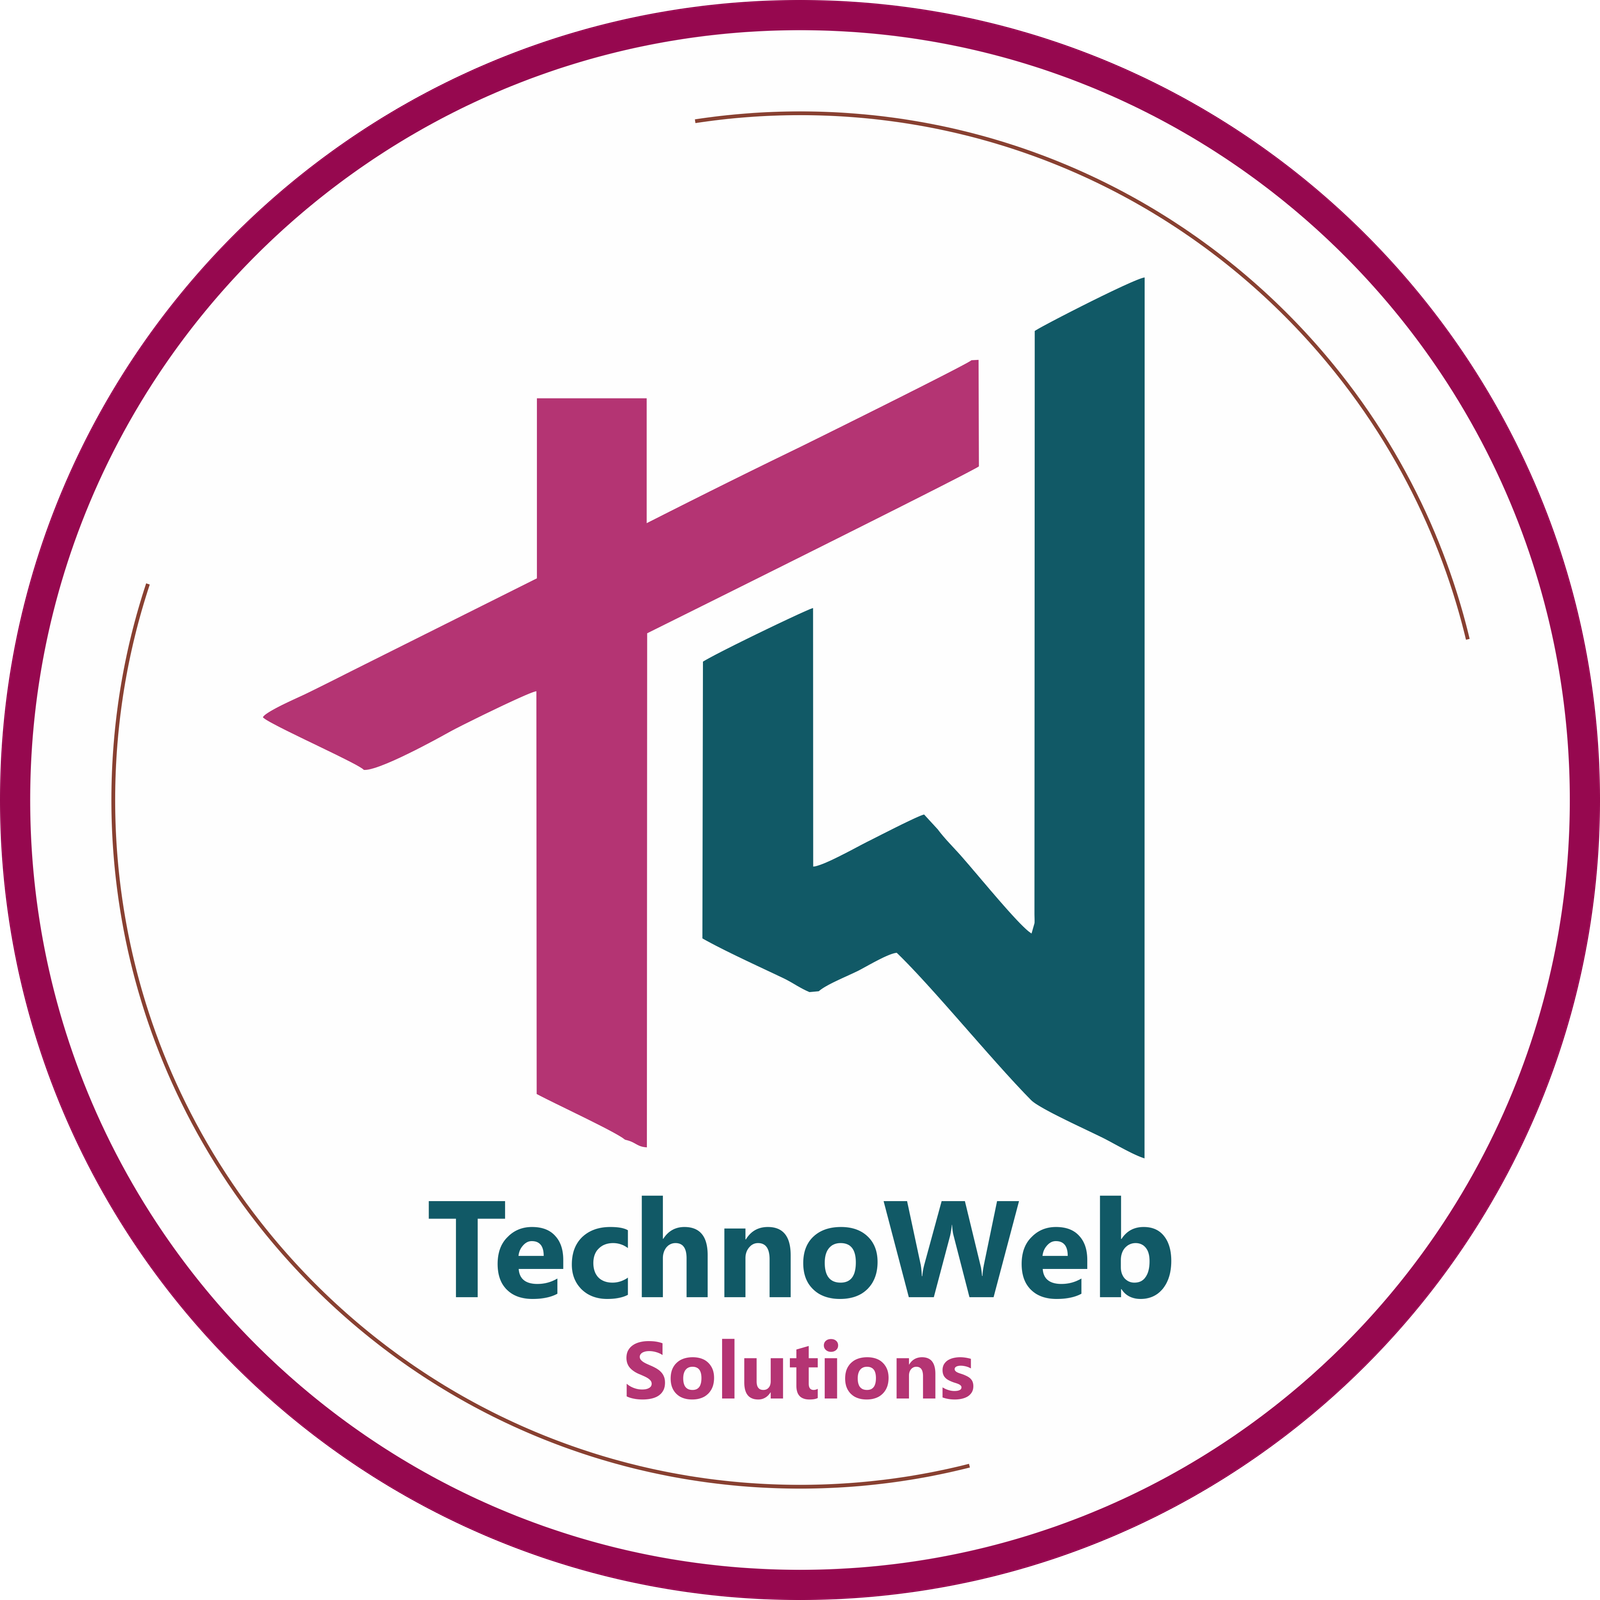 TechnoWeb